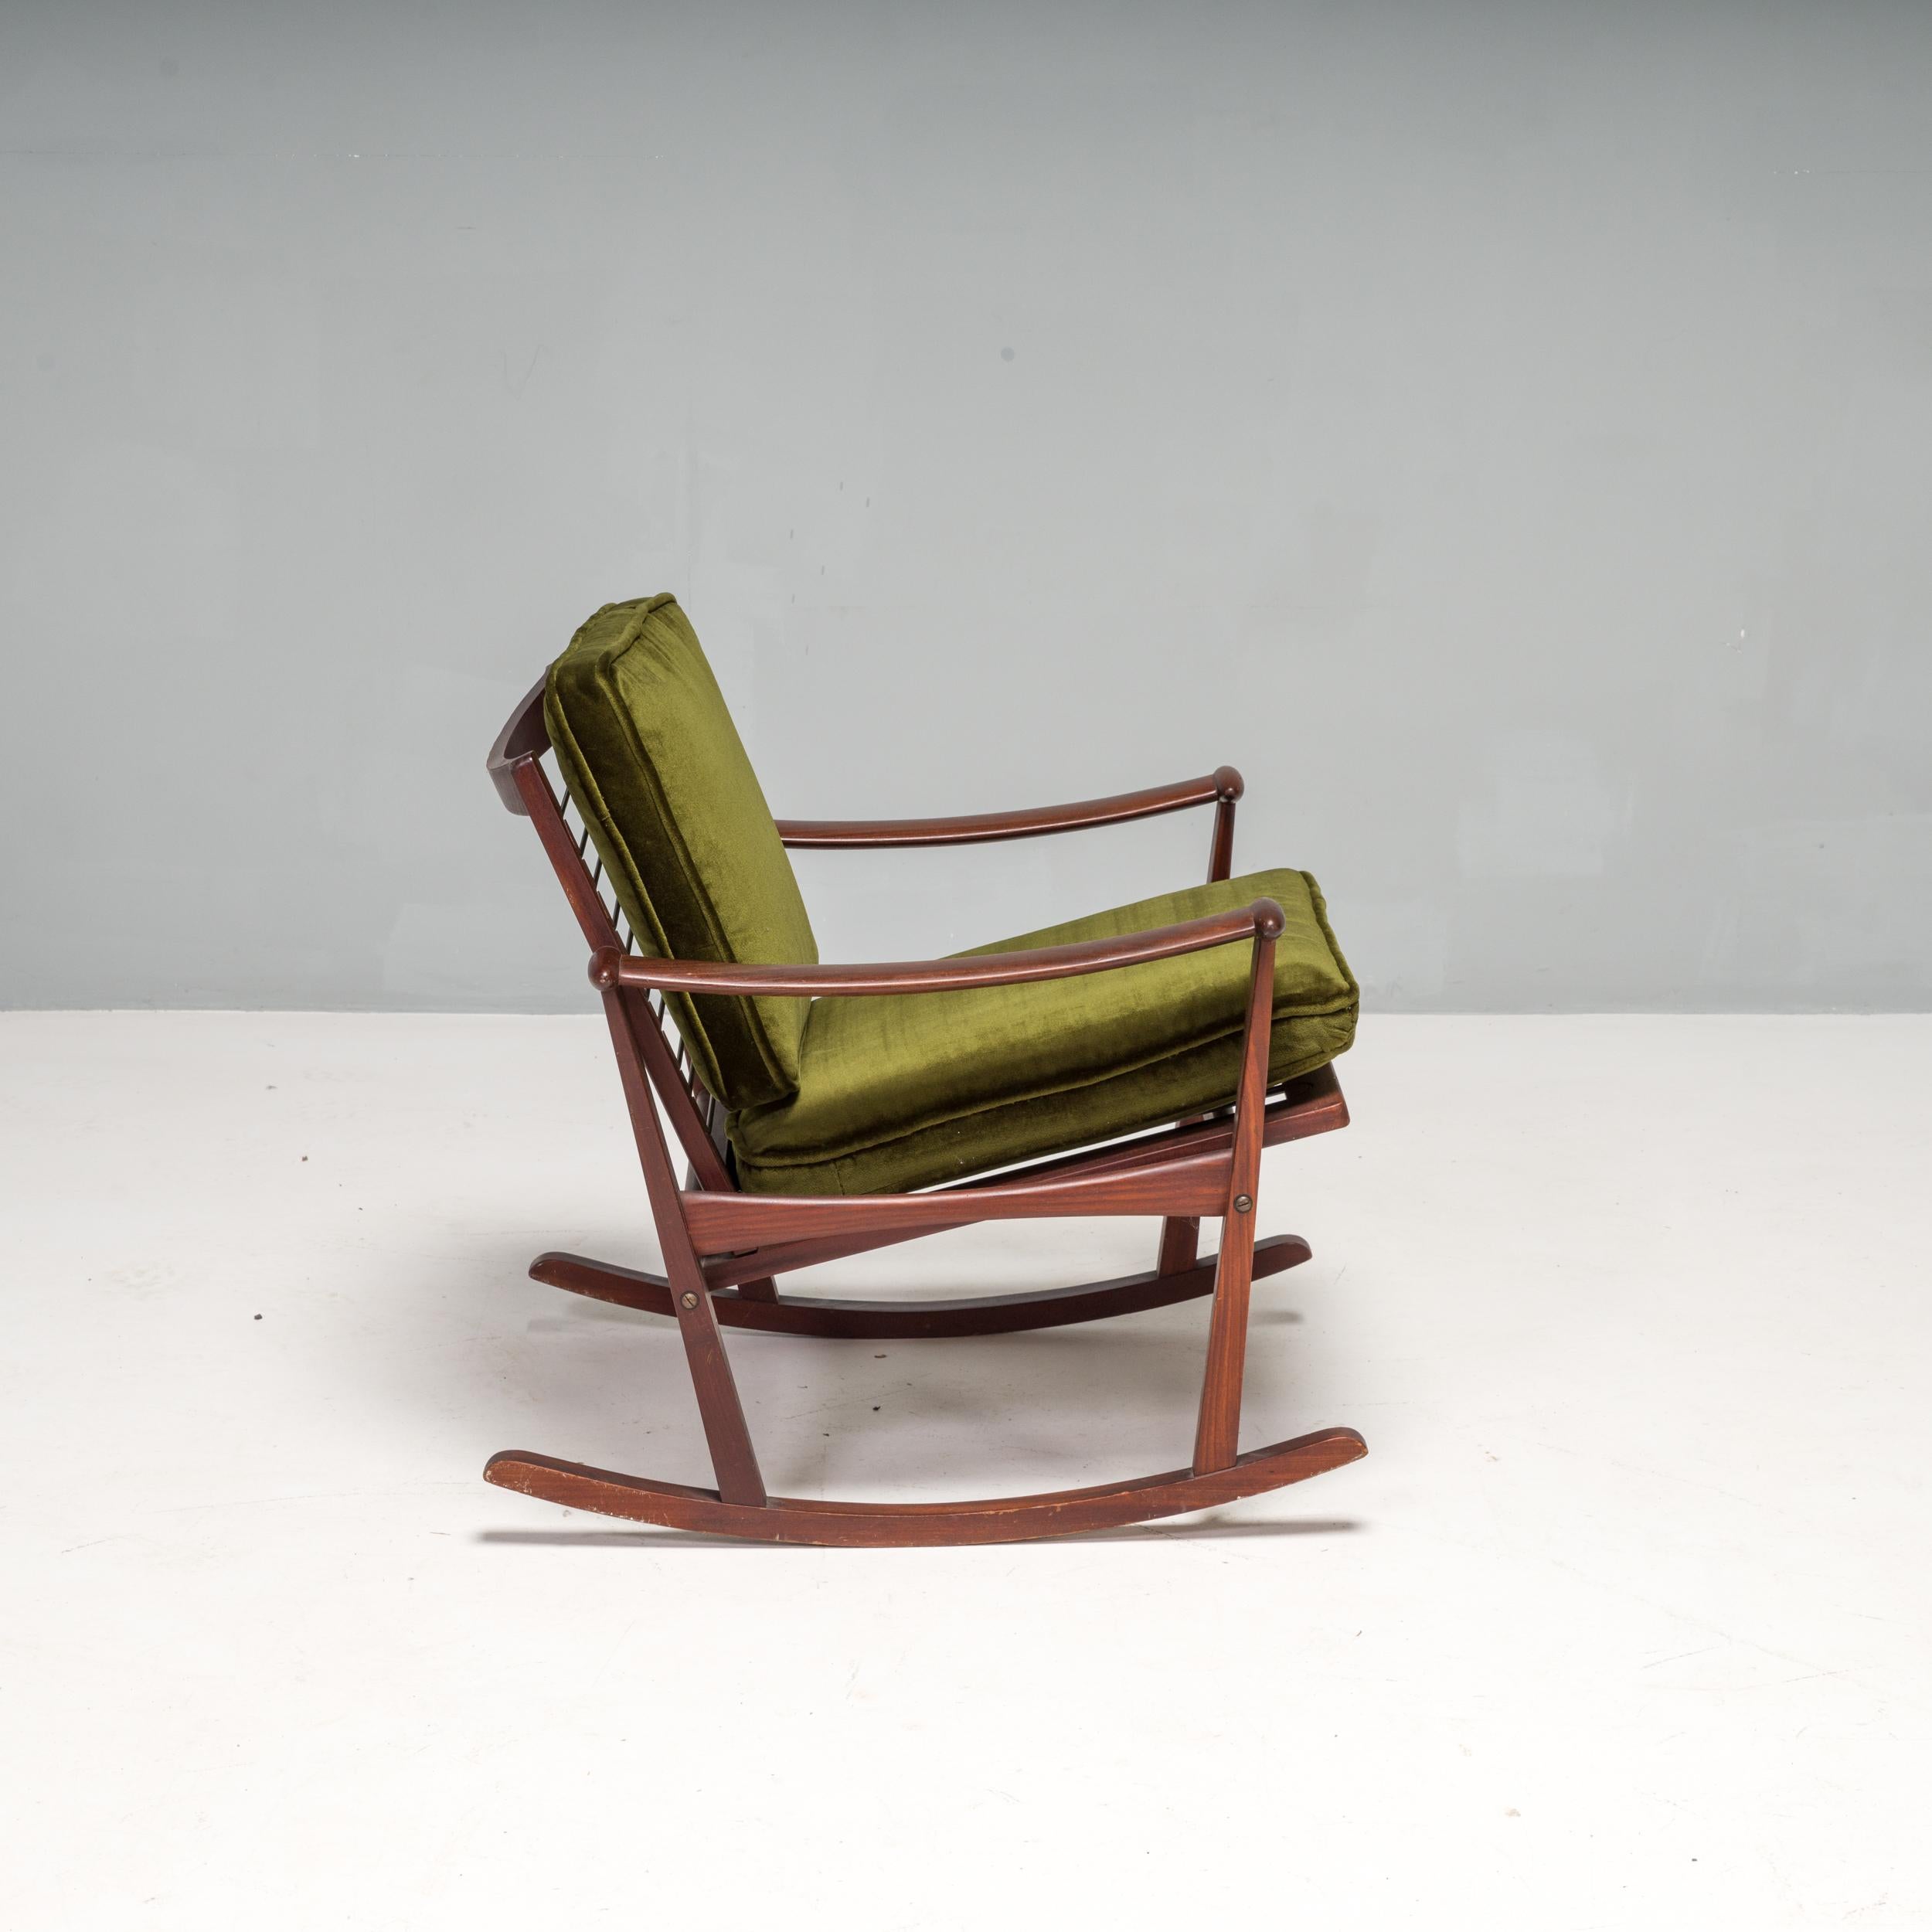 Fauteuil à bascule en bois, conçu par M. Nissen et vendu aux Pays-Bas par le fabricant néerlandais M-One dans les années 1960. 

Dotée d'un cadre en bois massif, la chaise possède des accoudoirs incurvés et une base incurvée permettant à la chaise